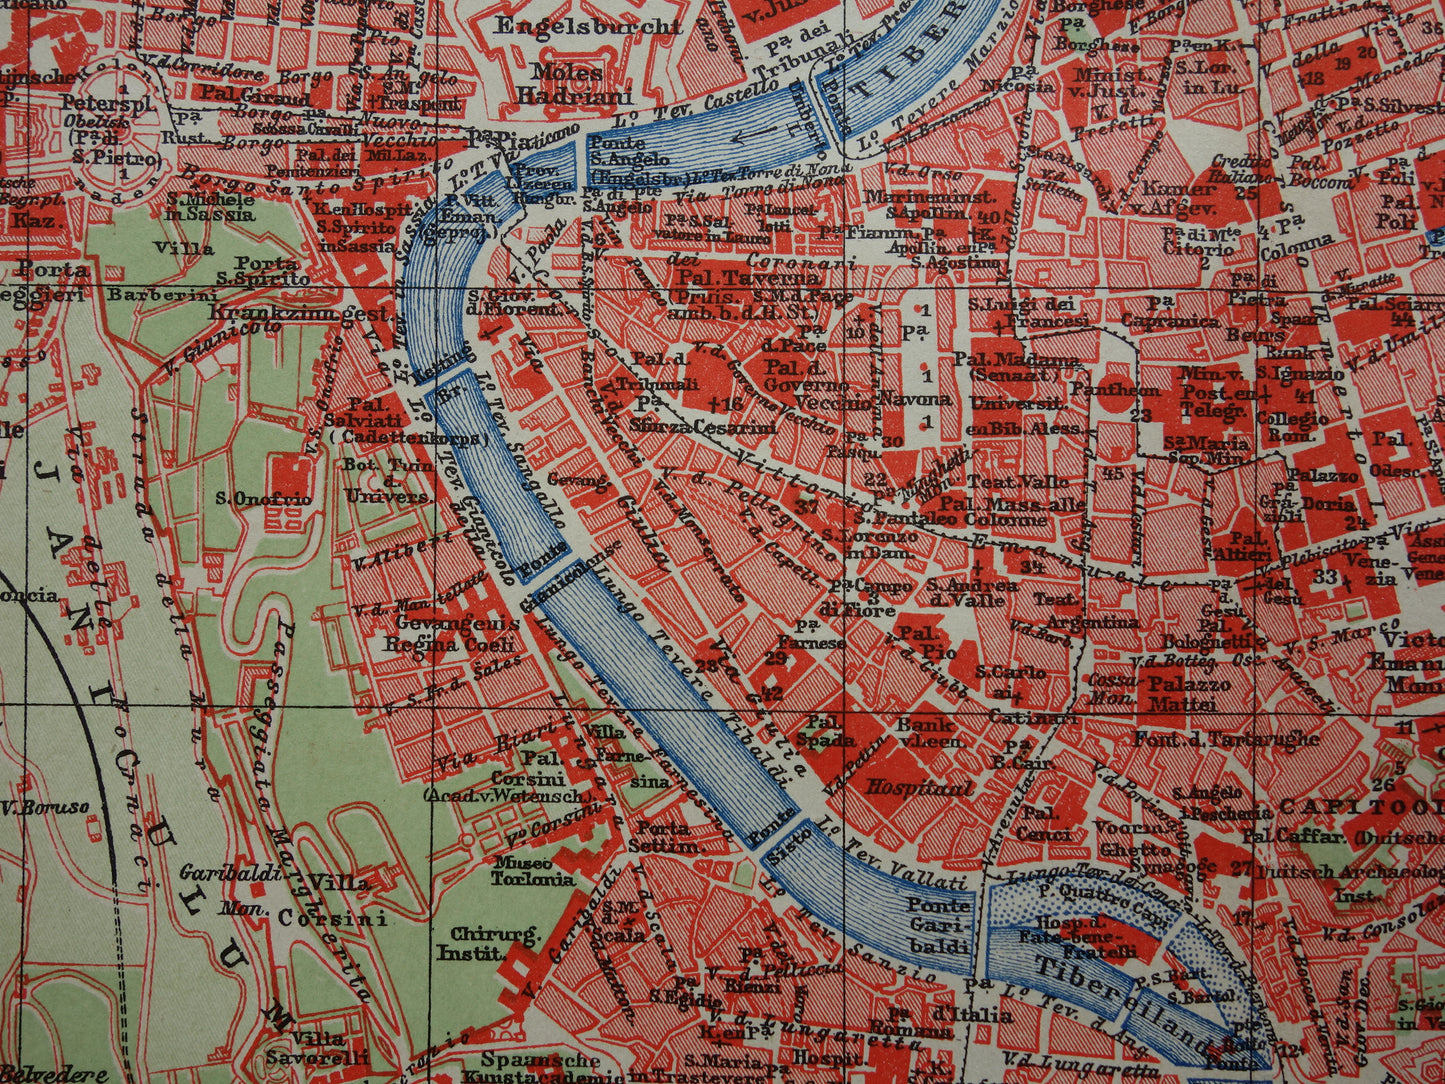 ROME oude plattegrond van Rome Italië uit 1910 originele Nederlandse antieke kaart van Rome